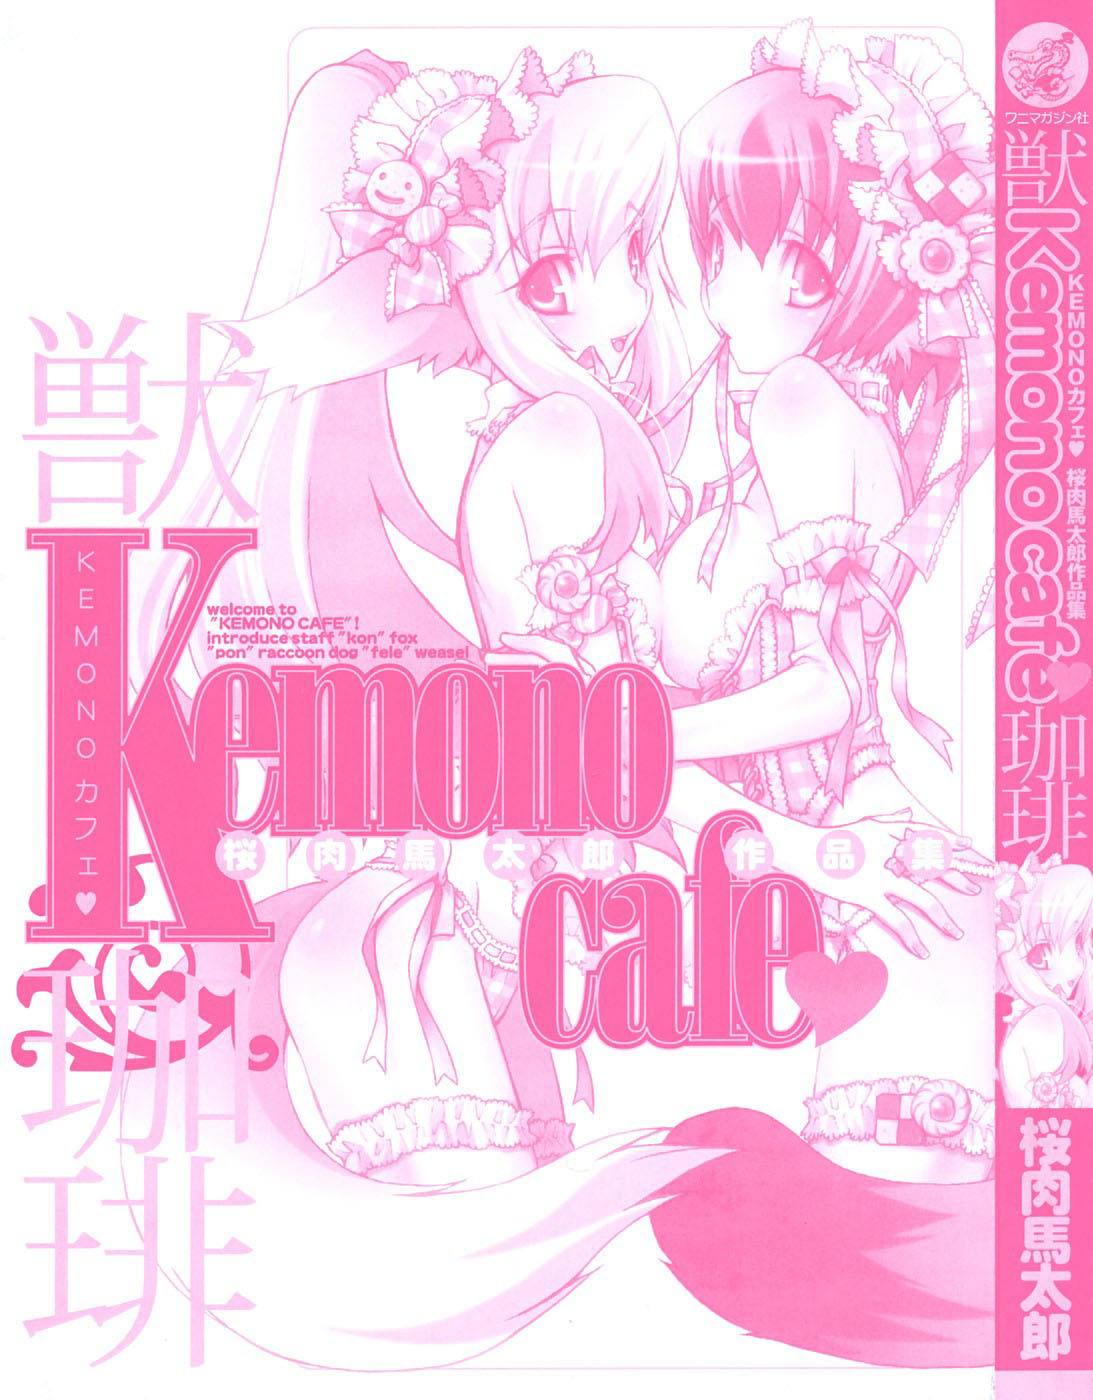 さくらにくうまたろう-Kemono_Cafe1-5、16-17 [ENG]